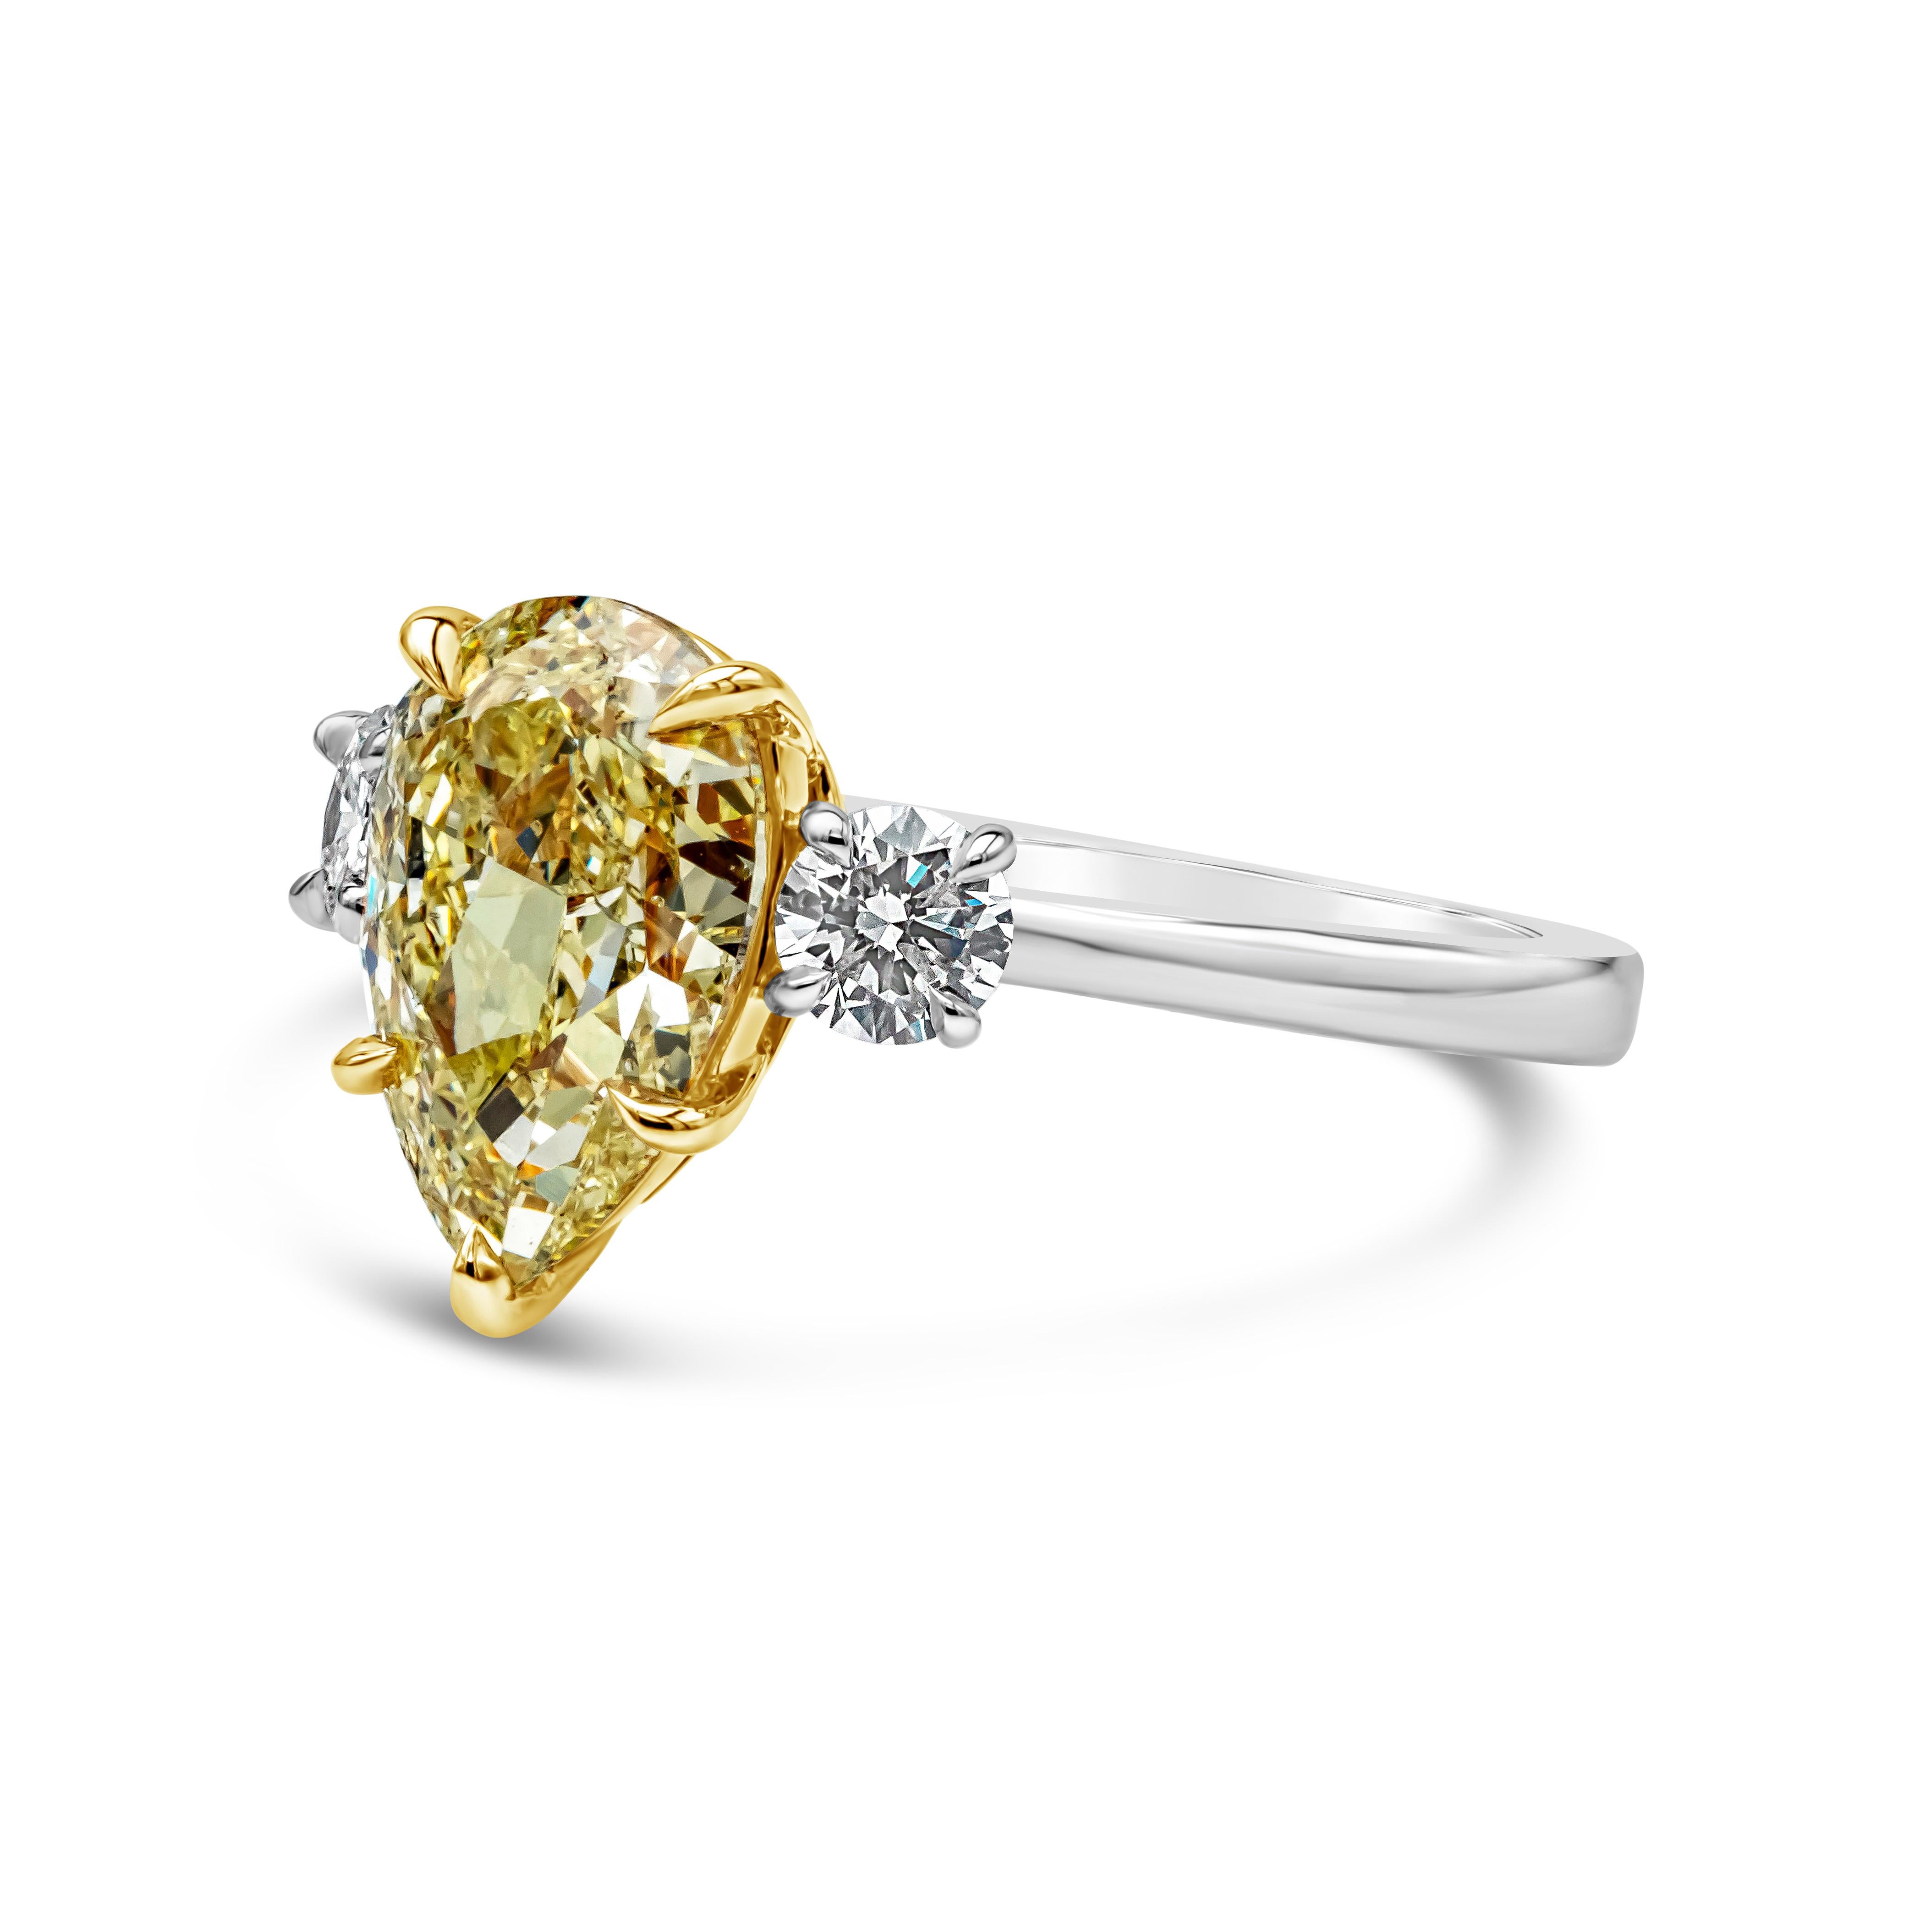 Dieser wunderschöne Verlobungsring mit drei Steinen präsentiert einen GIA-zertifizierten gelben Diamanten in Birnenform mit der Reinheit SI2, der in einer fünfzackigen Korbfassung gefasst ist. Flankiert von runden Brillanten auf jeder Seite mit